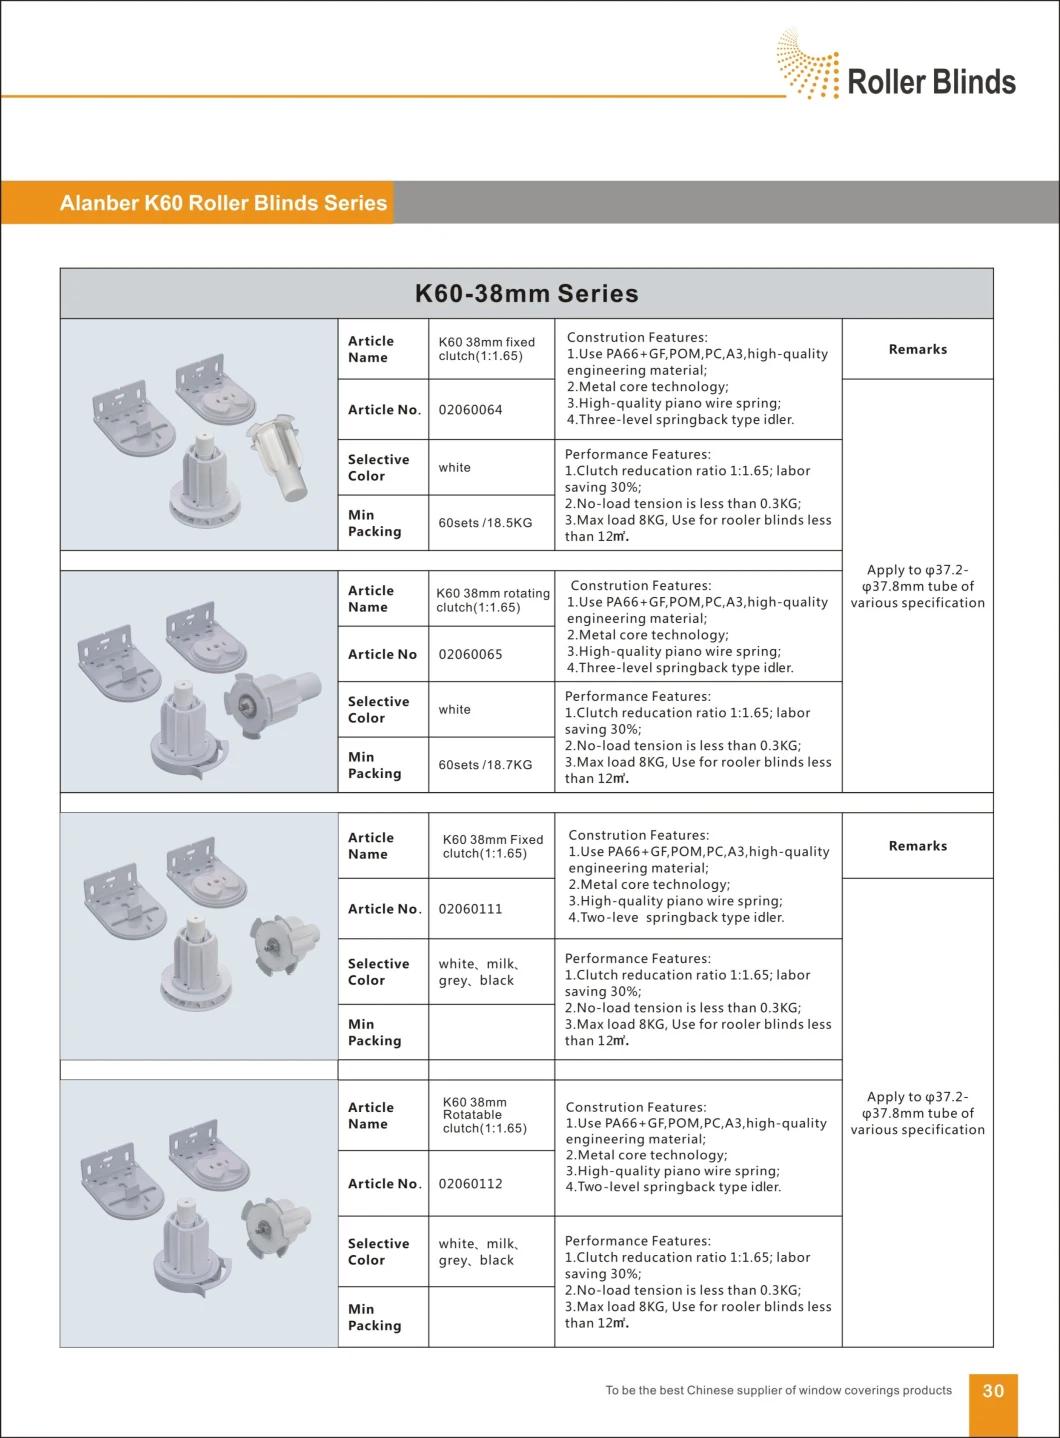 K60-38mm Fixed Deceleration Clutch Roller Blinds Components, for Roller Blinds